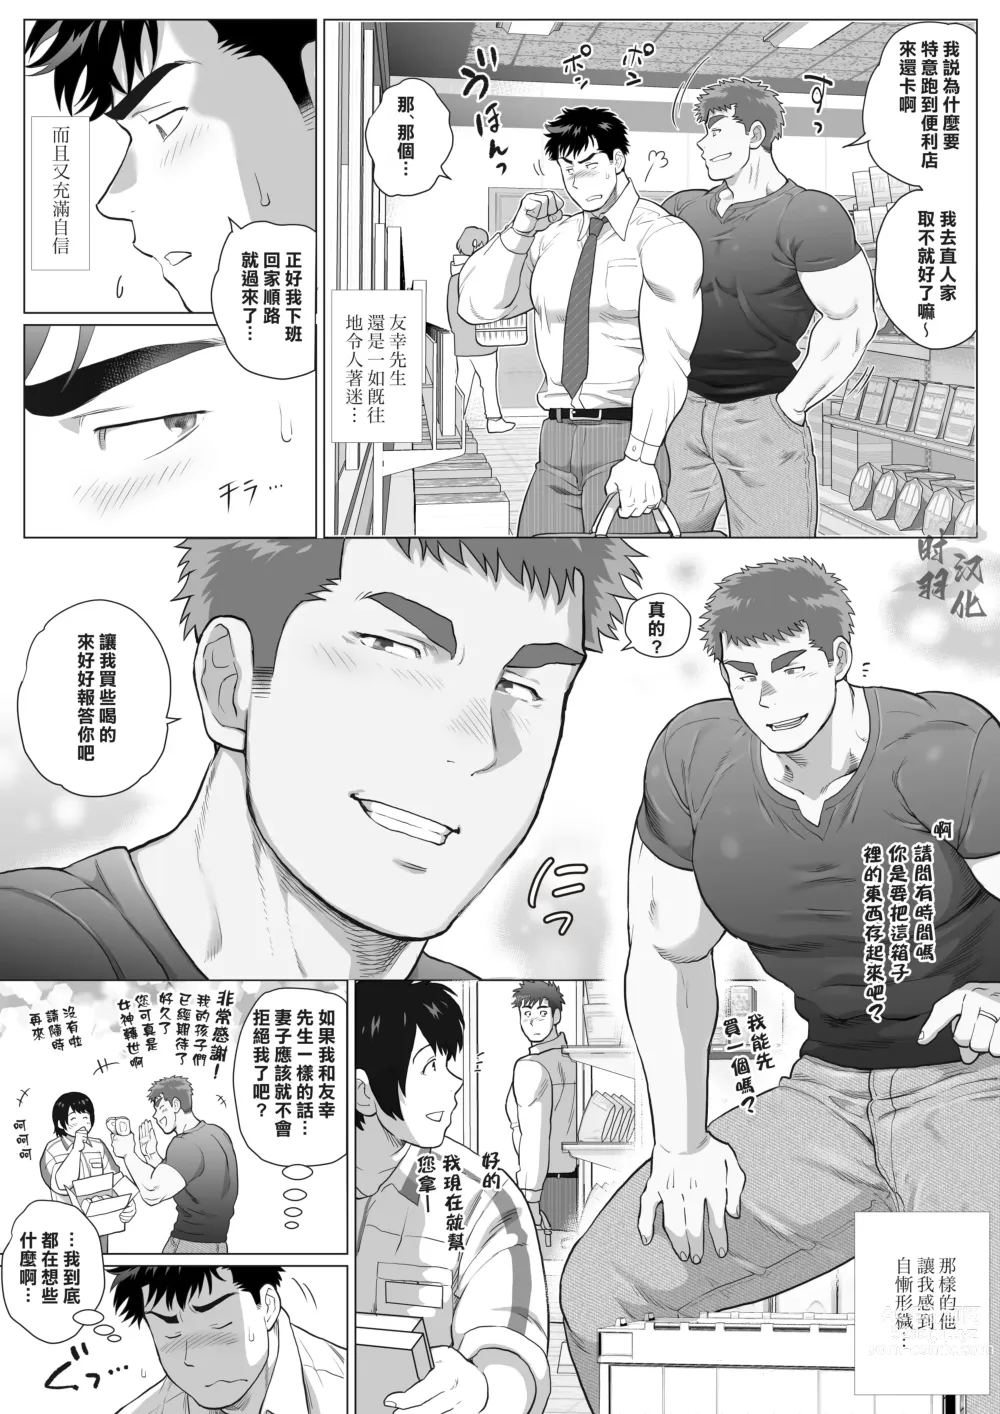 Page 8 of manga 直人爸爸与友幸爸爸 第三话